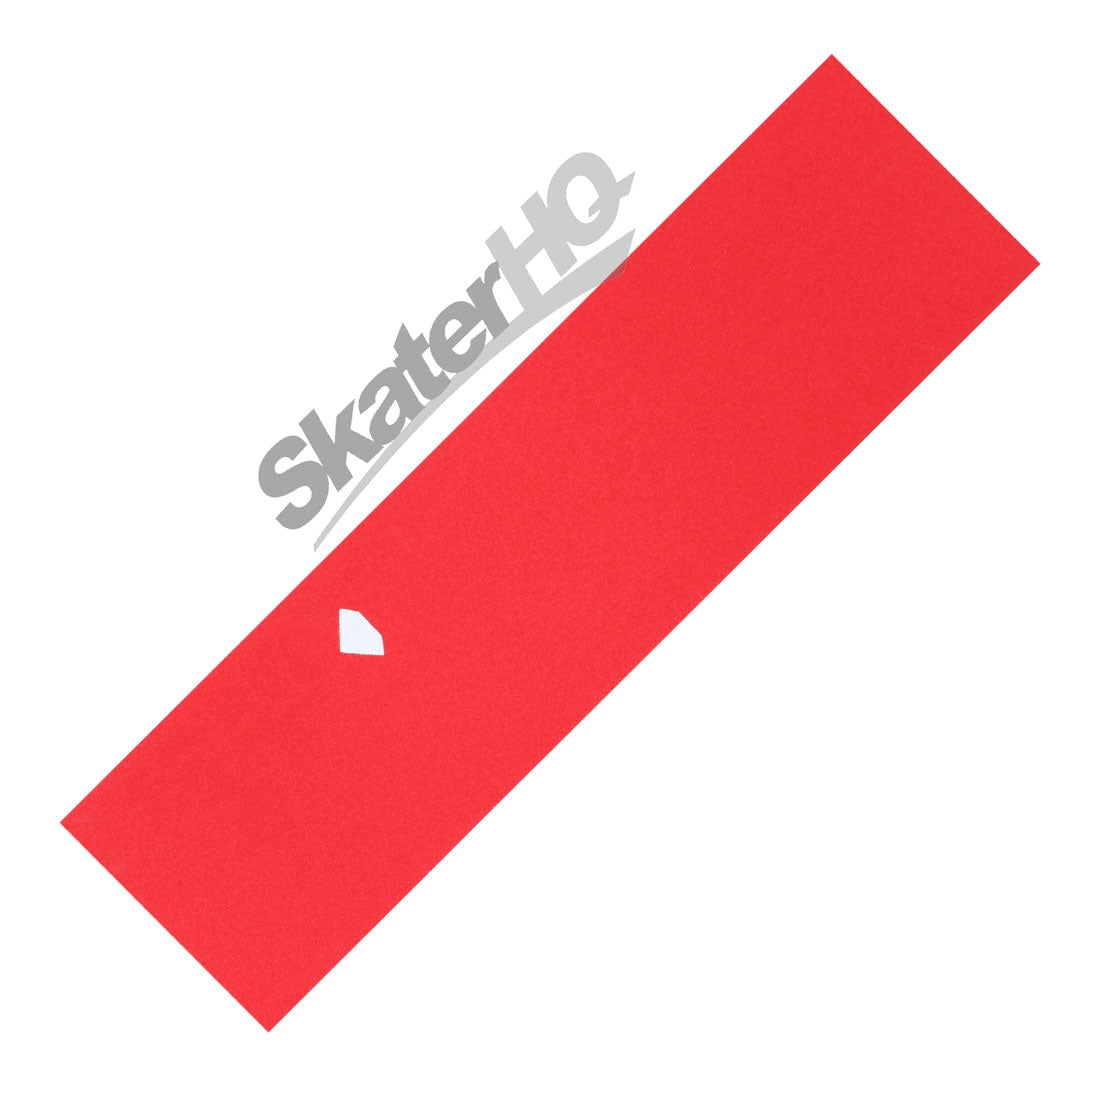 Diamond Stamp Grip Sheet - Red Griptape